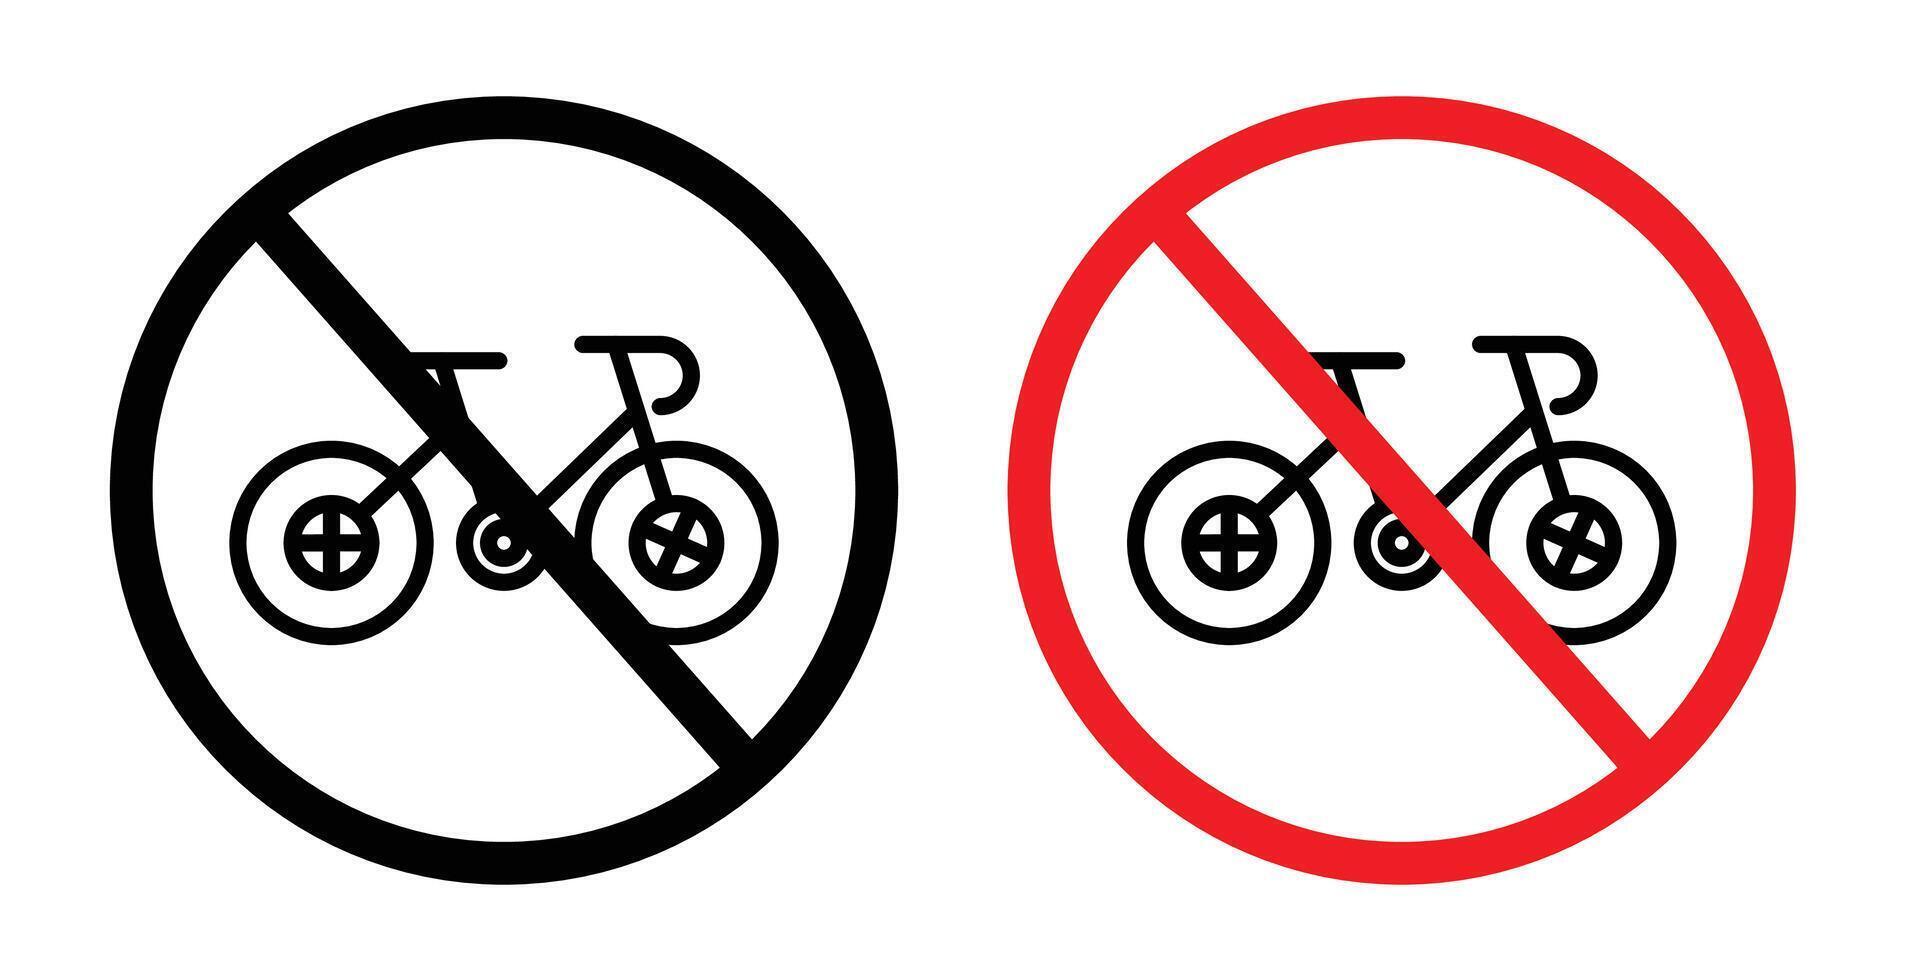 bicicletta divieto cartello vettore